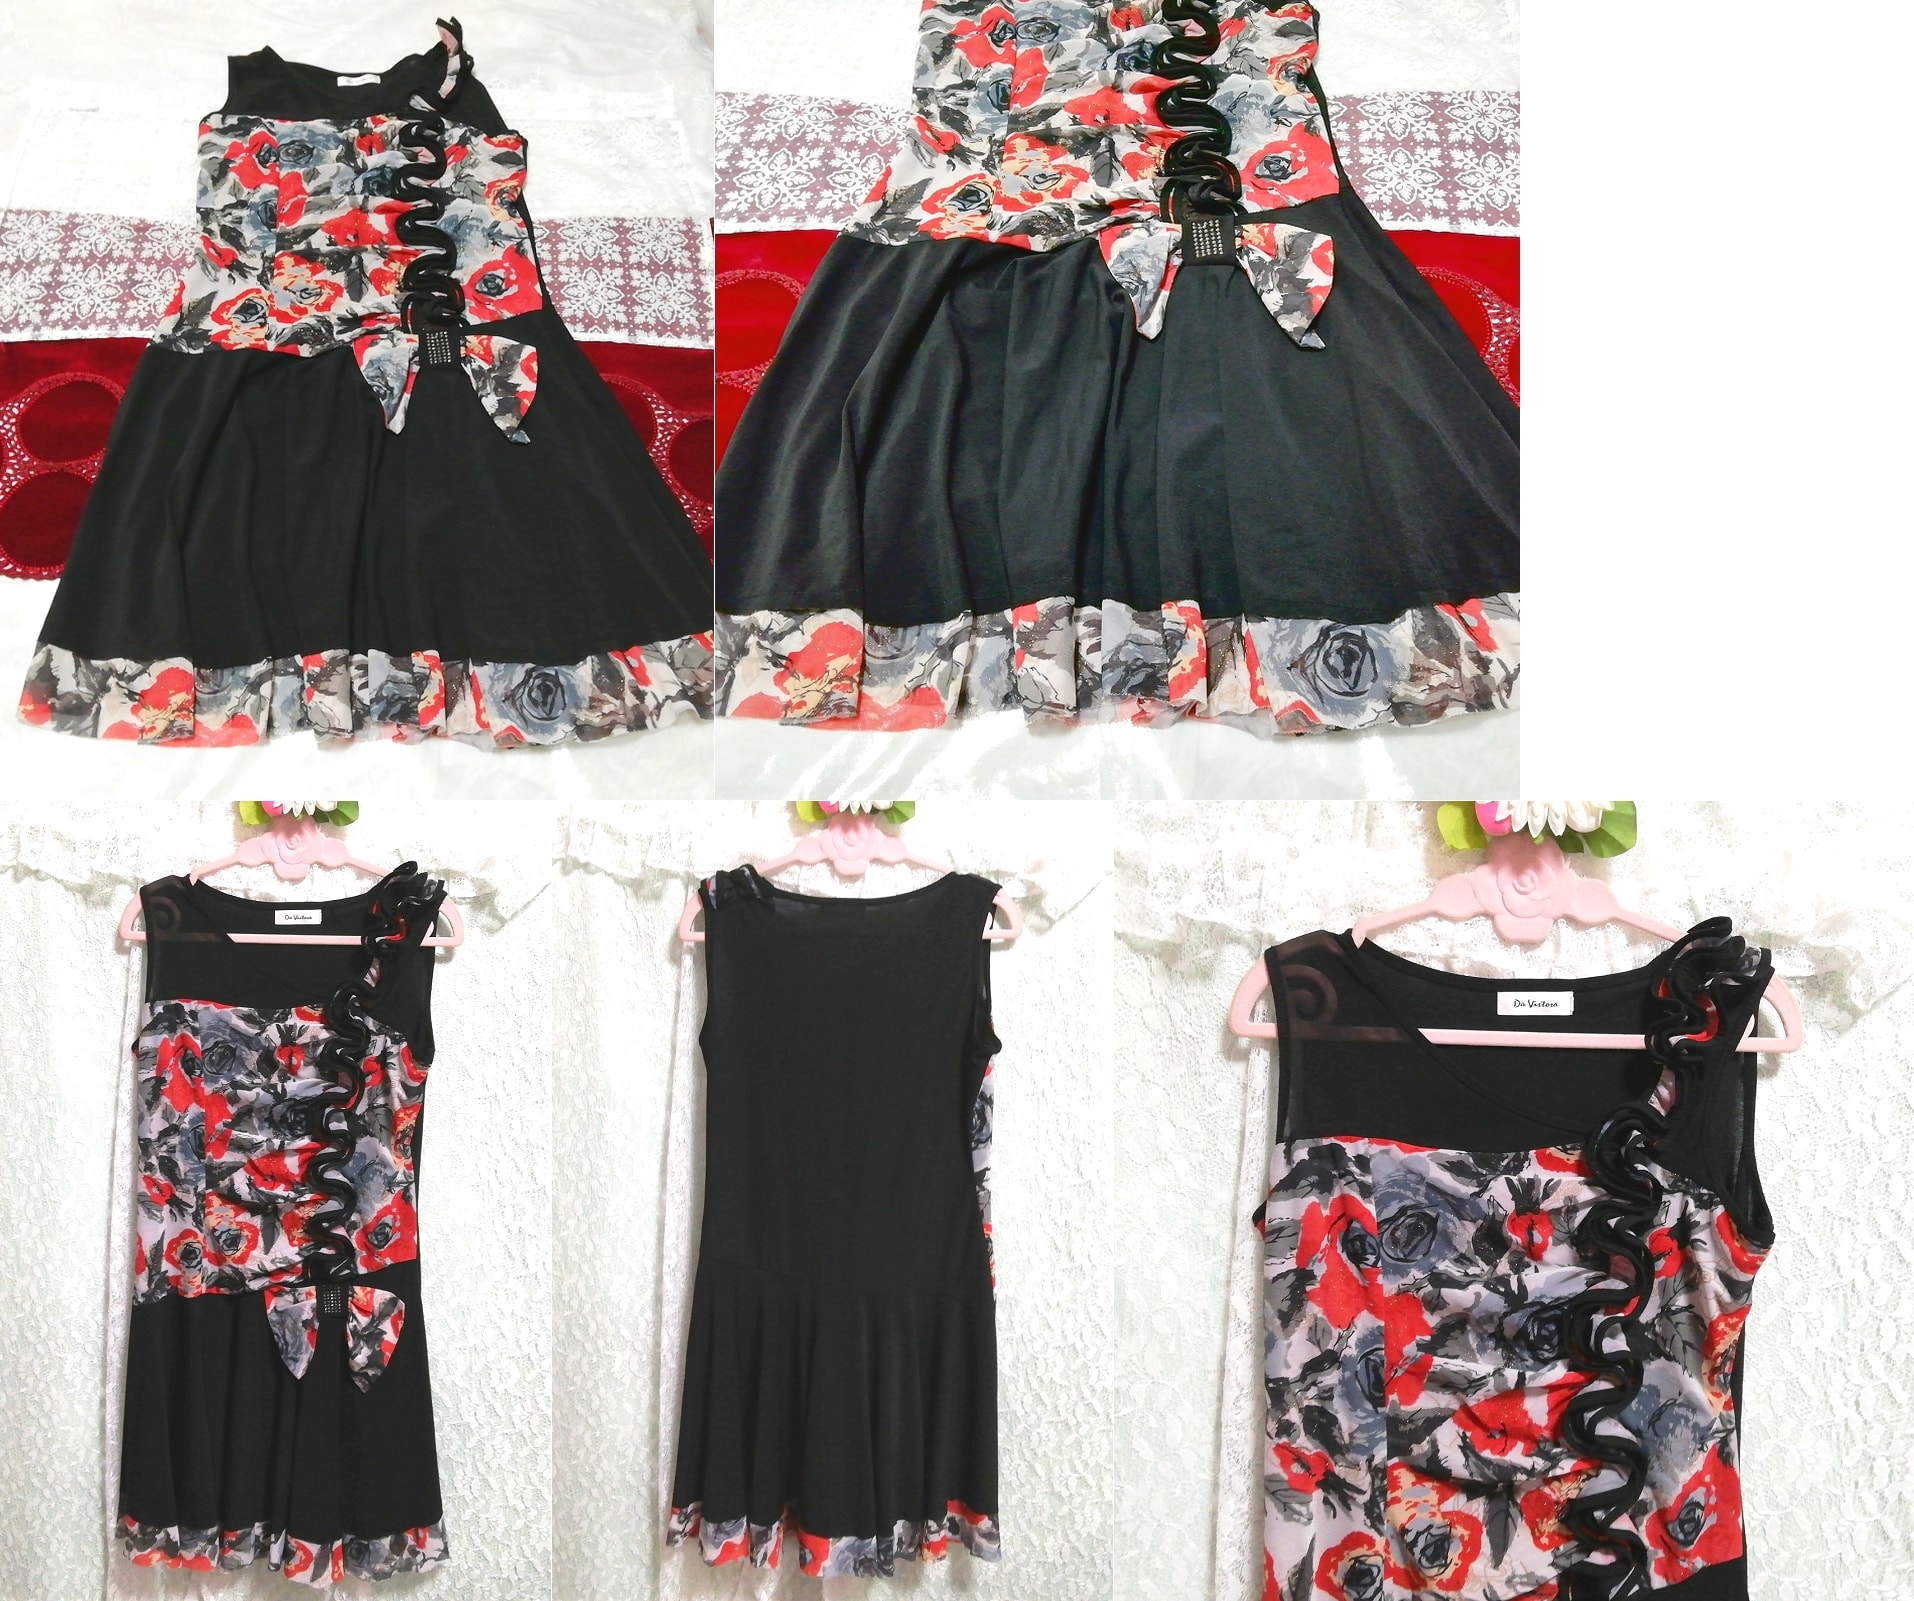 블랙 레드 그레이 아트 패턴 러플 네글리제 나이트가운 민소매 드레스, 패션, 숙녀 패션, 잠옷, 잠옷